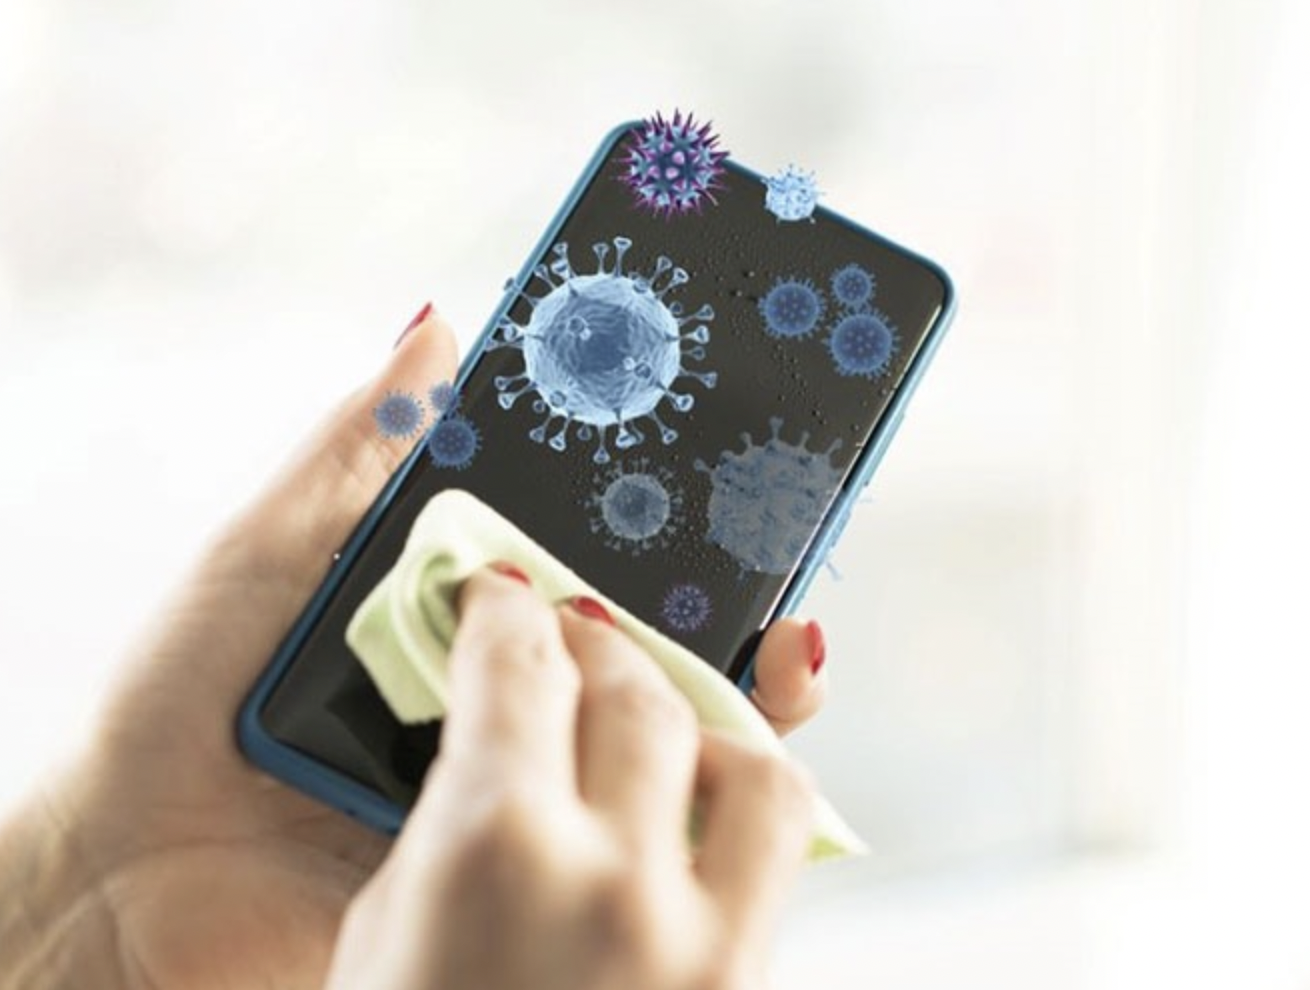 Những loại vi khuẩn gây bệnh thường xuất hiện trên điện thoại có thể ảnh hưởng sức khỏe